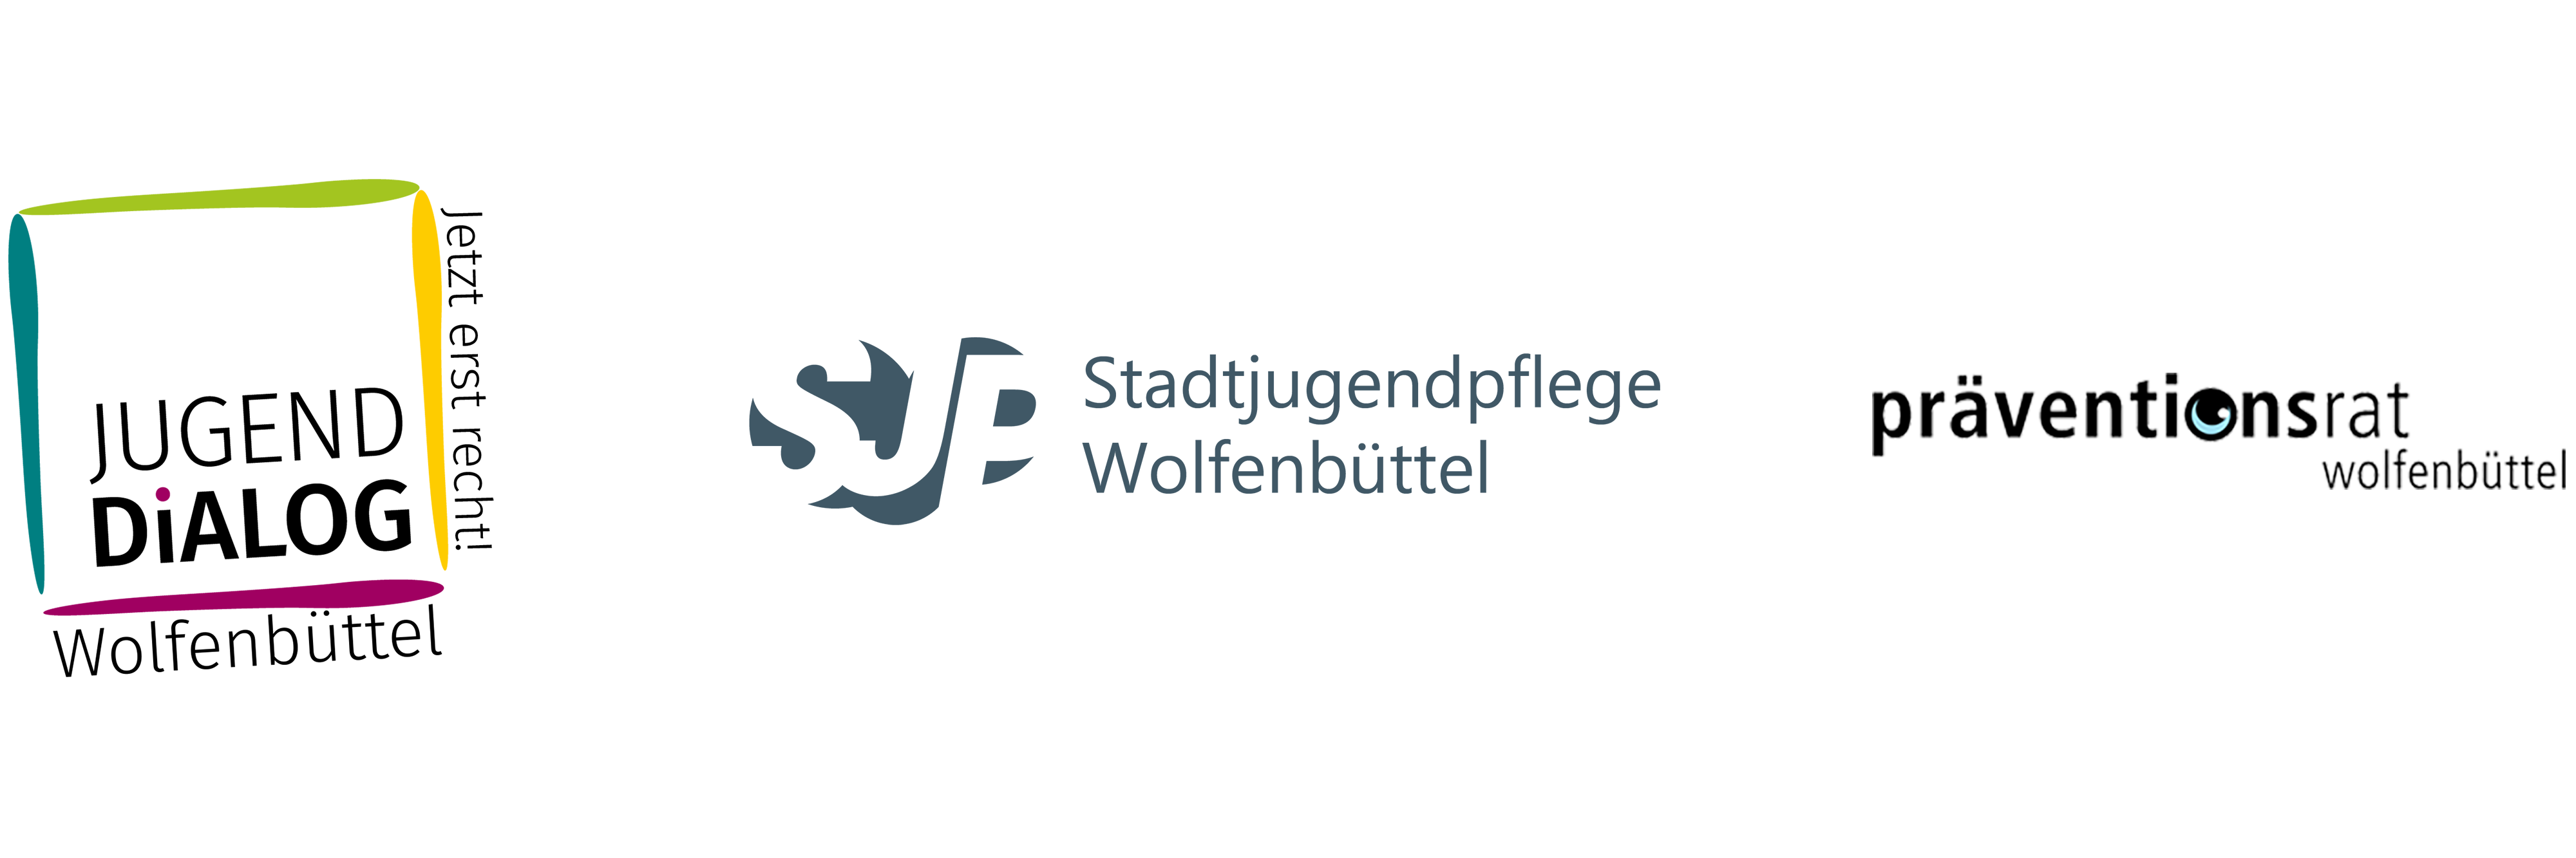 Jugenddialog Wolfenbüttel